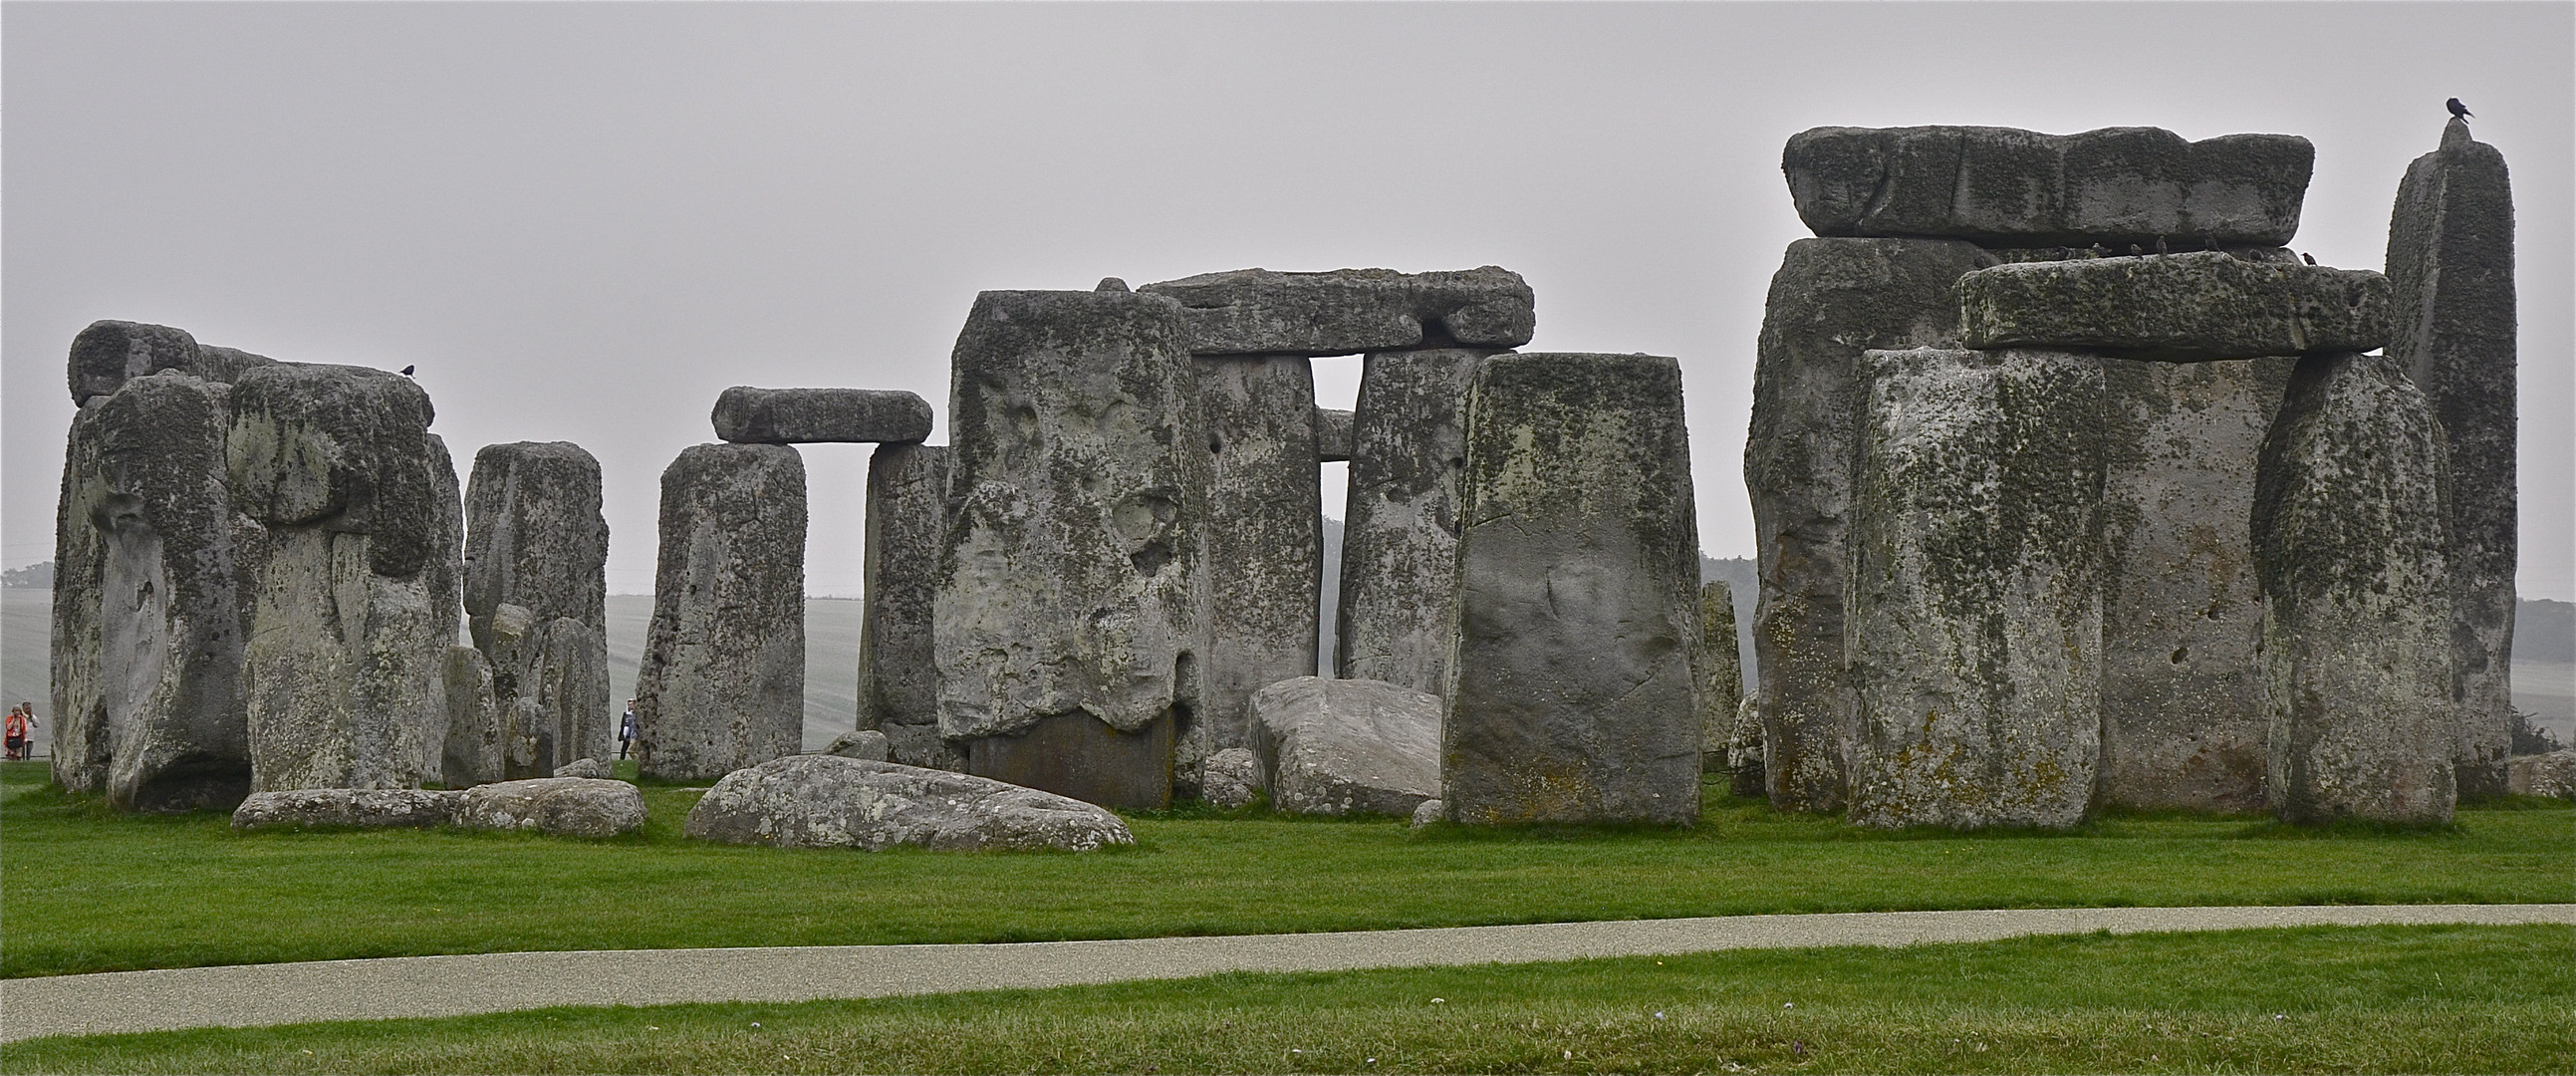 Prähistorisches Monument: Stonehenge